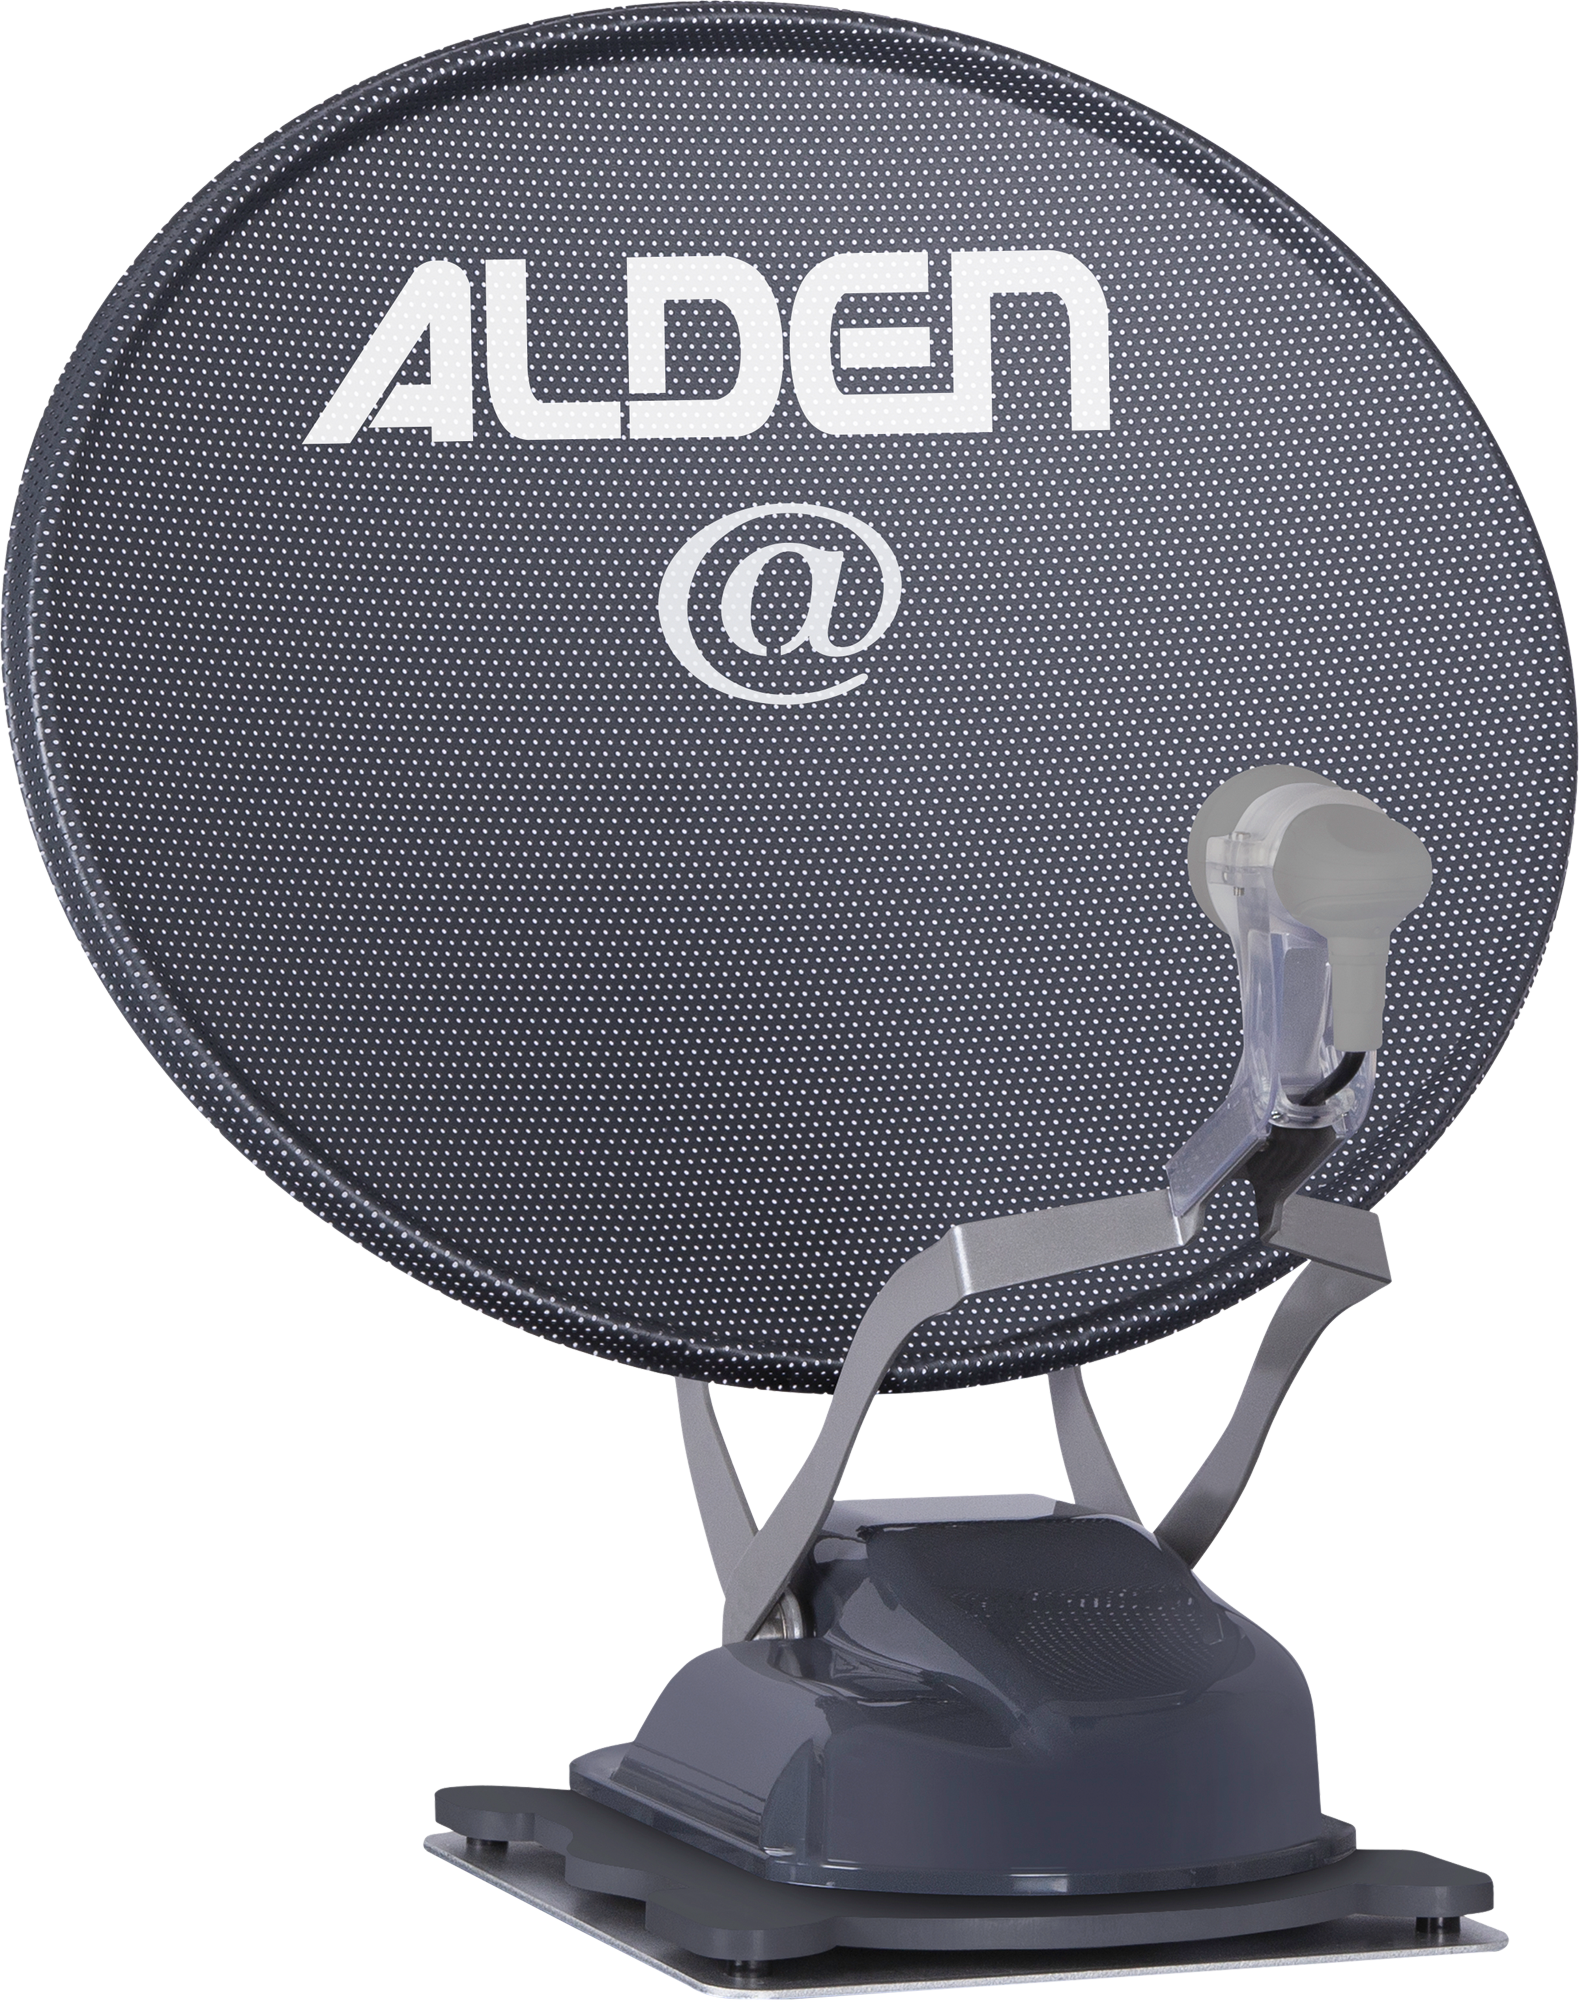 Alden Onelight@ 60 HD EVO vollautomatische Satellitenanlage Platinium inklusive LTE Antenne und A.I.O. Smart TV mit integrierter Antennensteuerung  22 Zoll